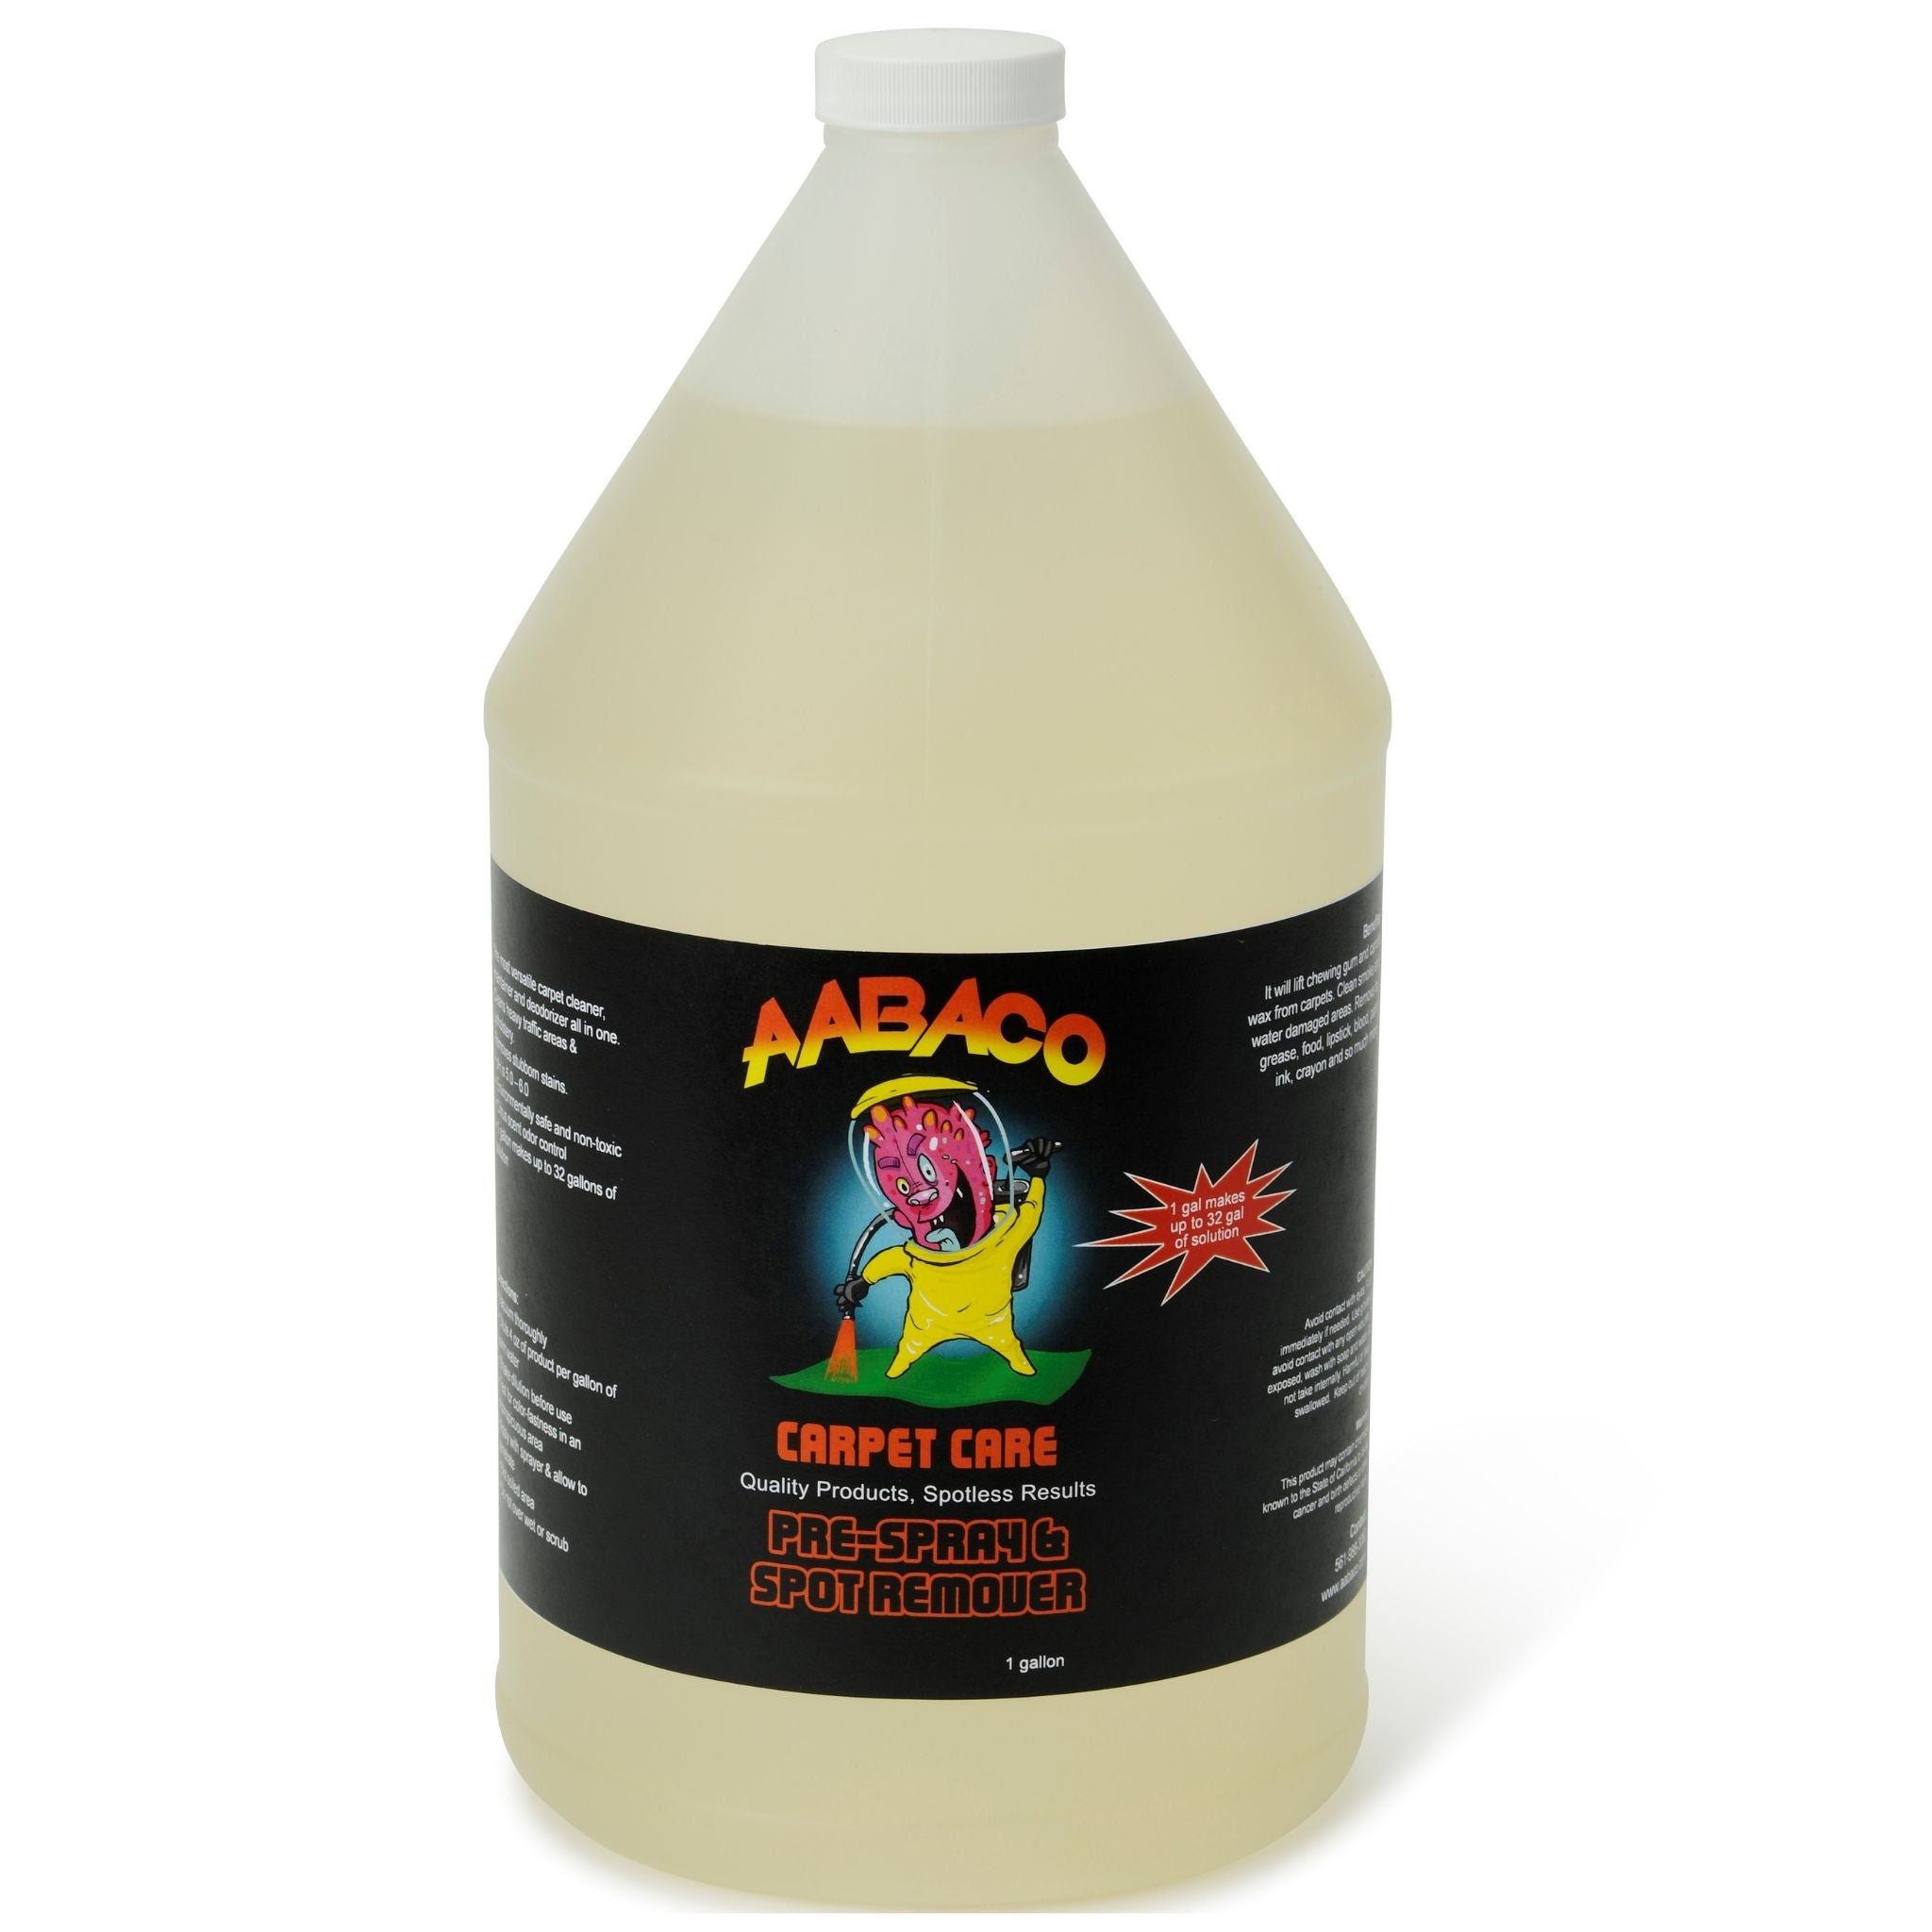 AABACO Carpet Pre-Spray & Spot Citrus Remover